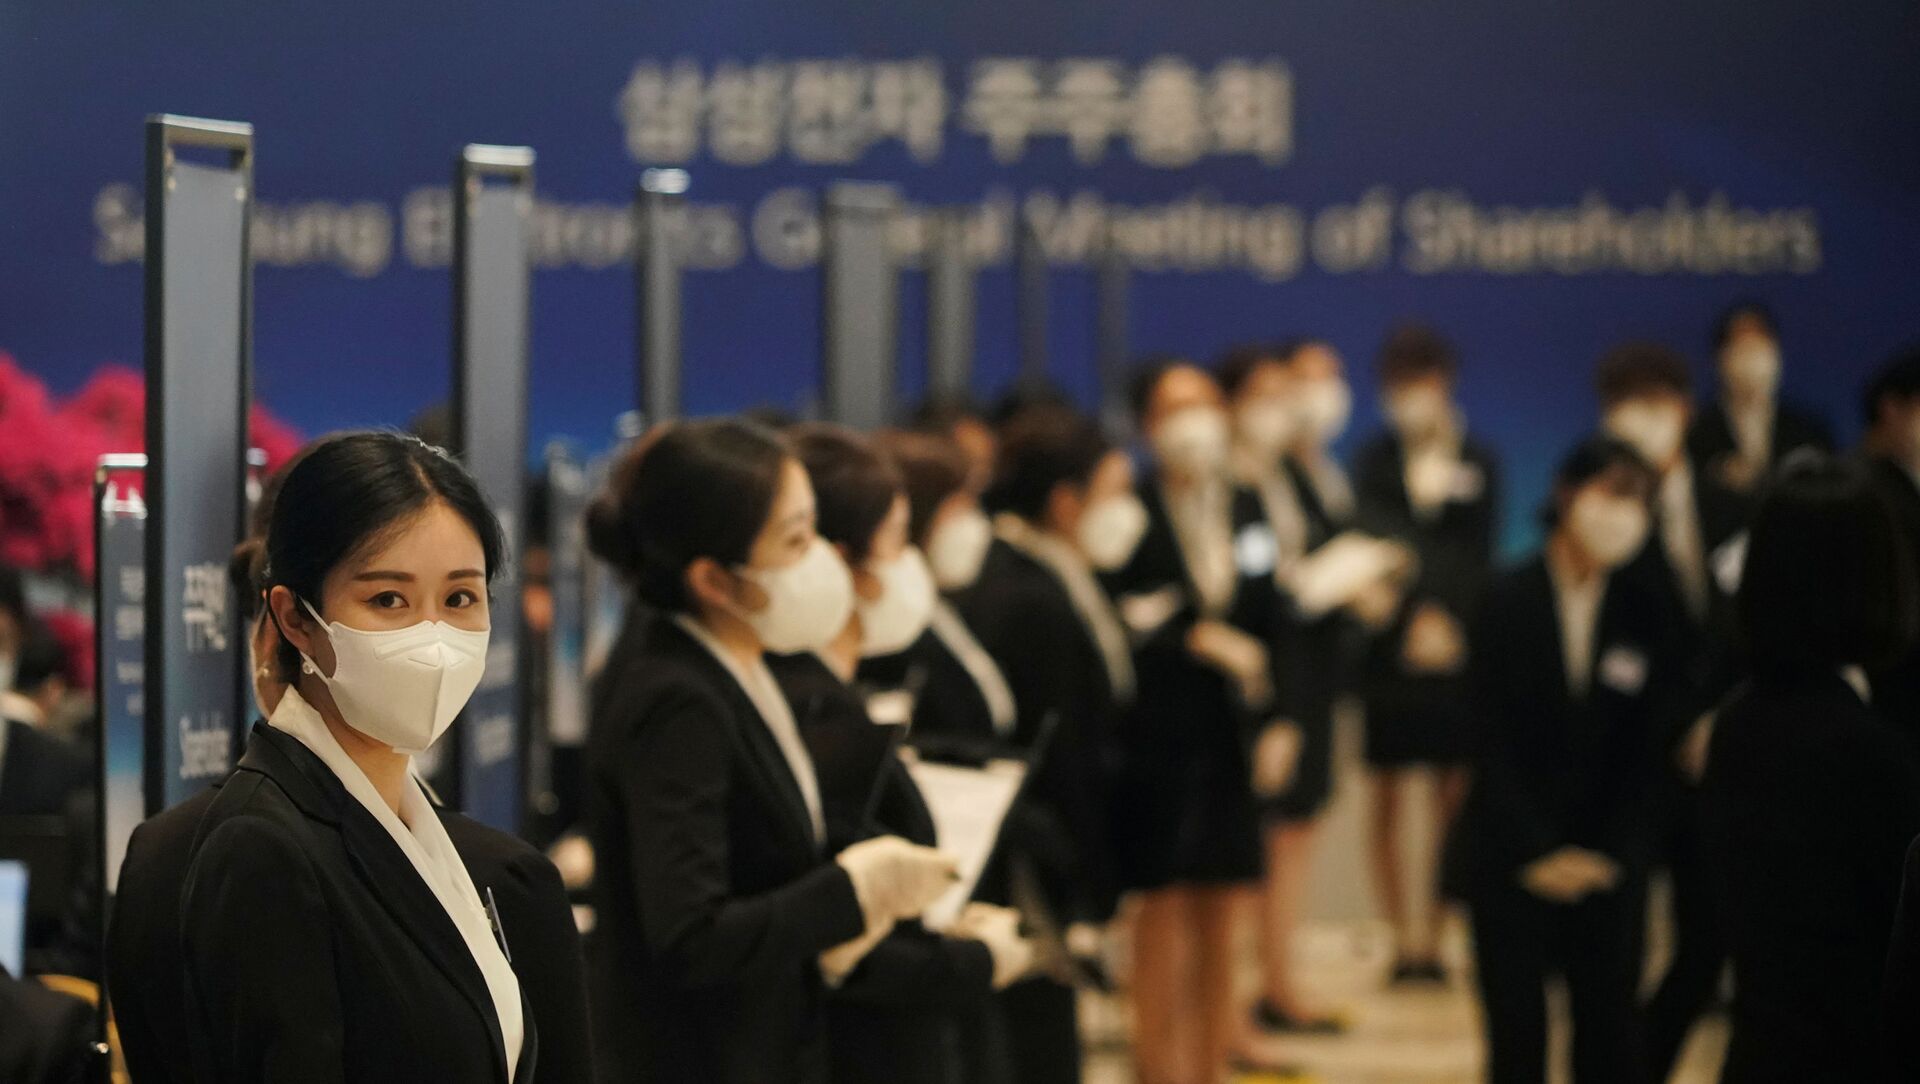 موظفون في شركة سامسونغ في كوريا الجنوبية يرتدون كمامة واقية من فيروس كورونا المستجد (كوفيد - 19)  - سبوتنيك عربي, 1920, 17.03.2021